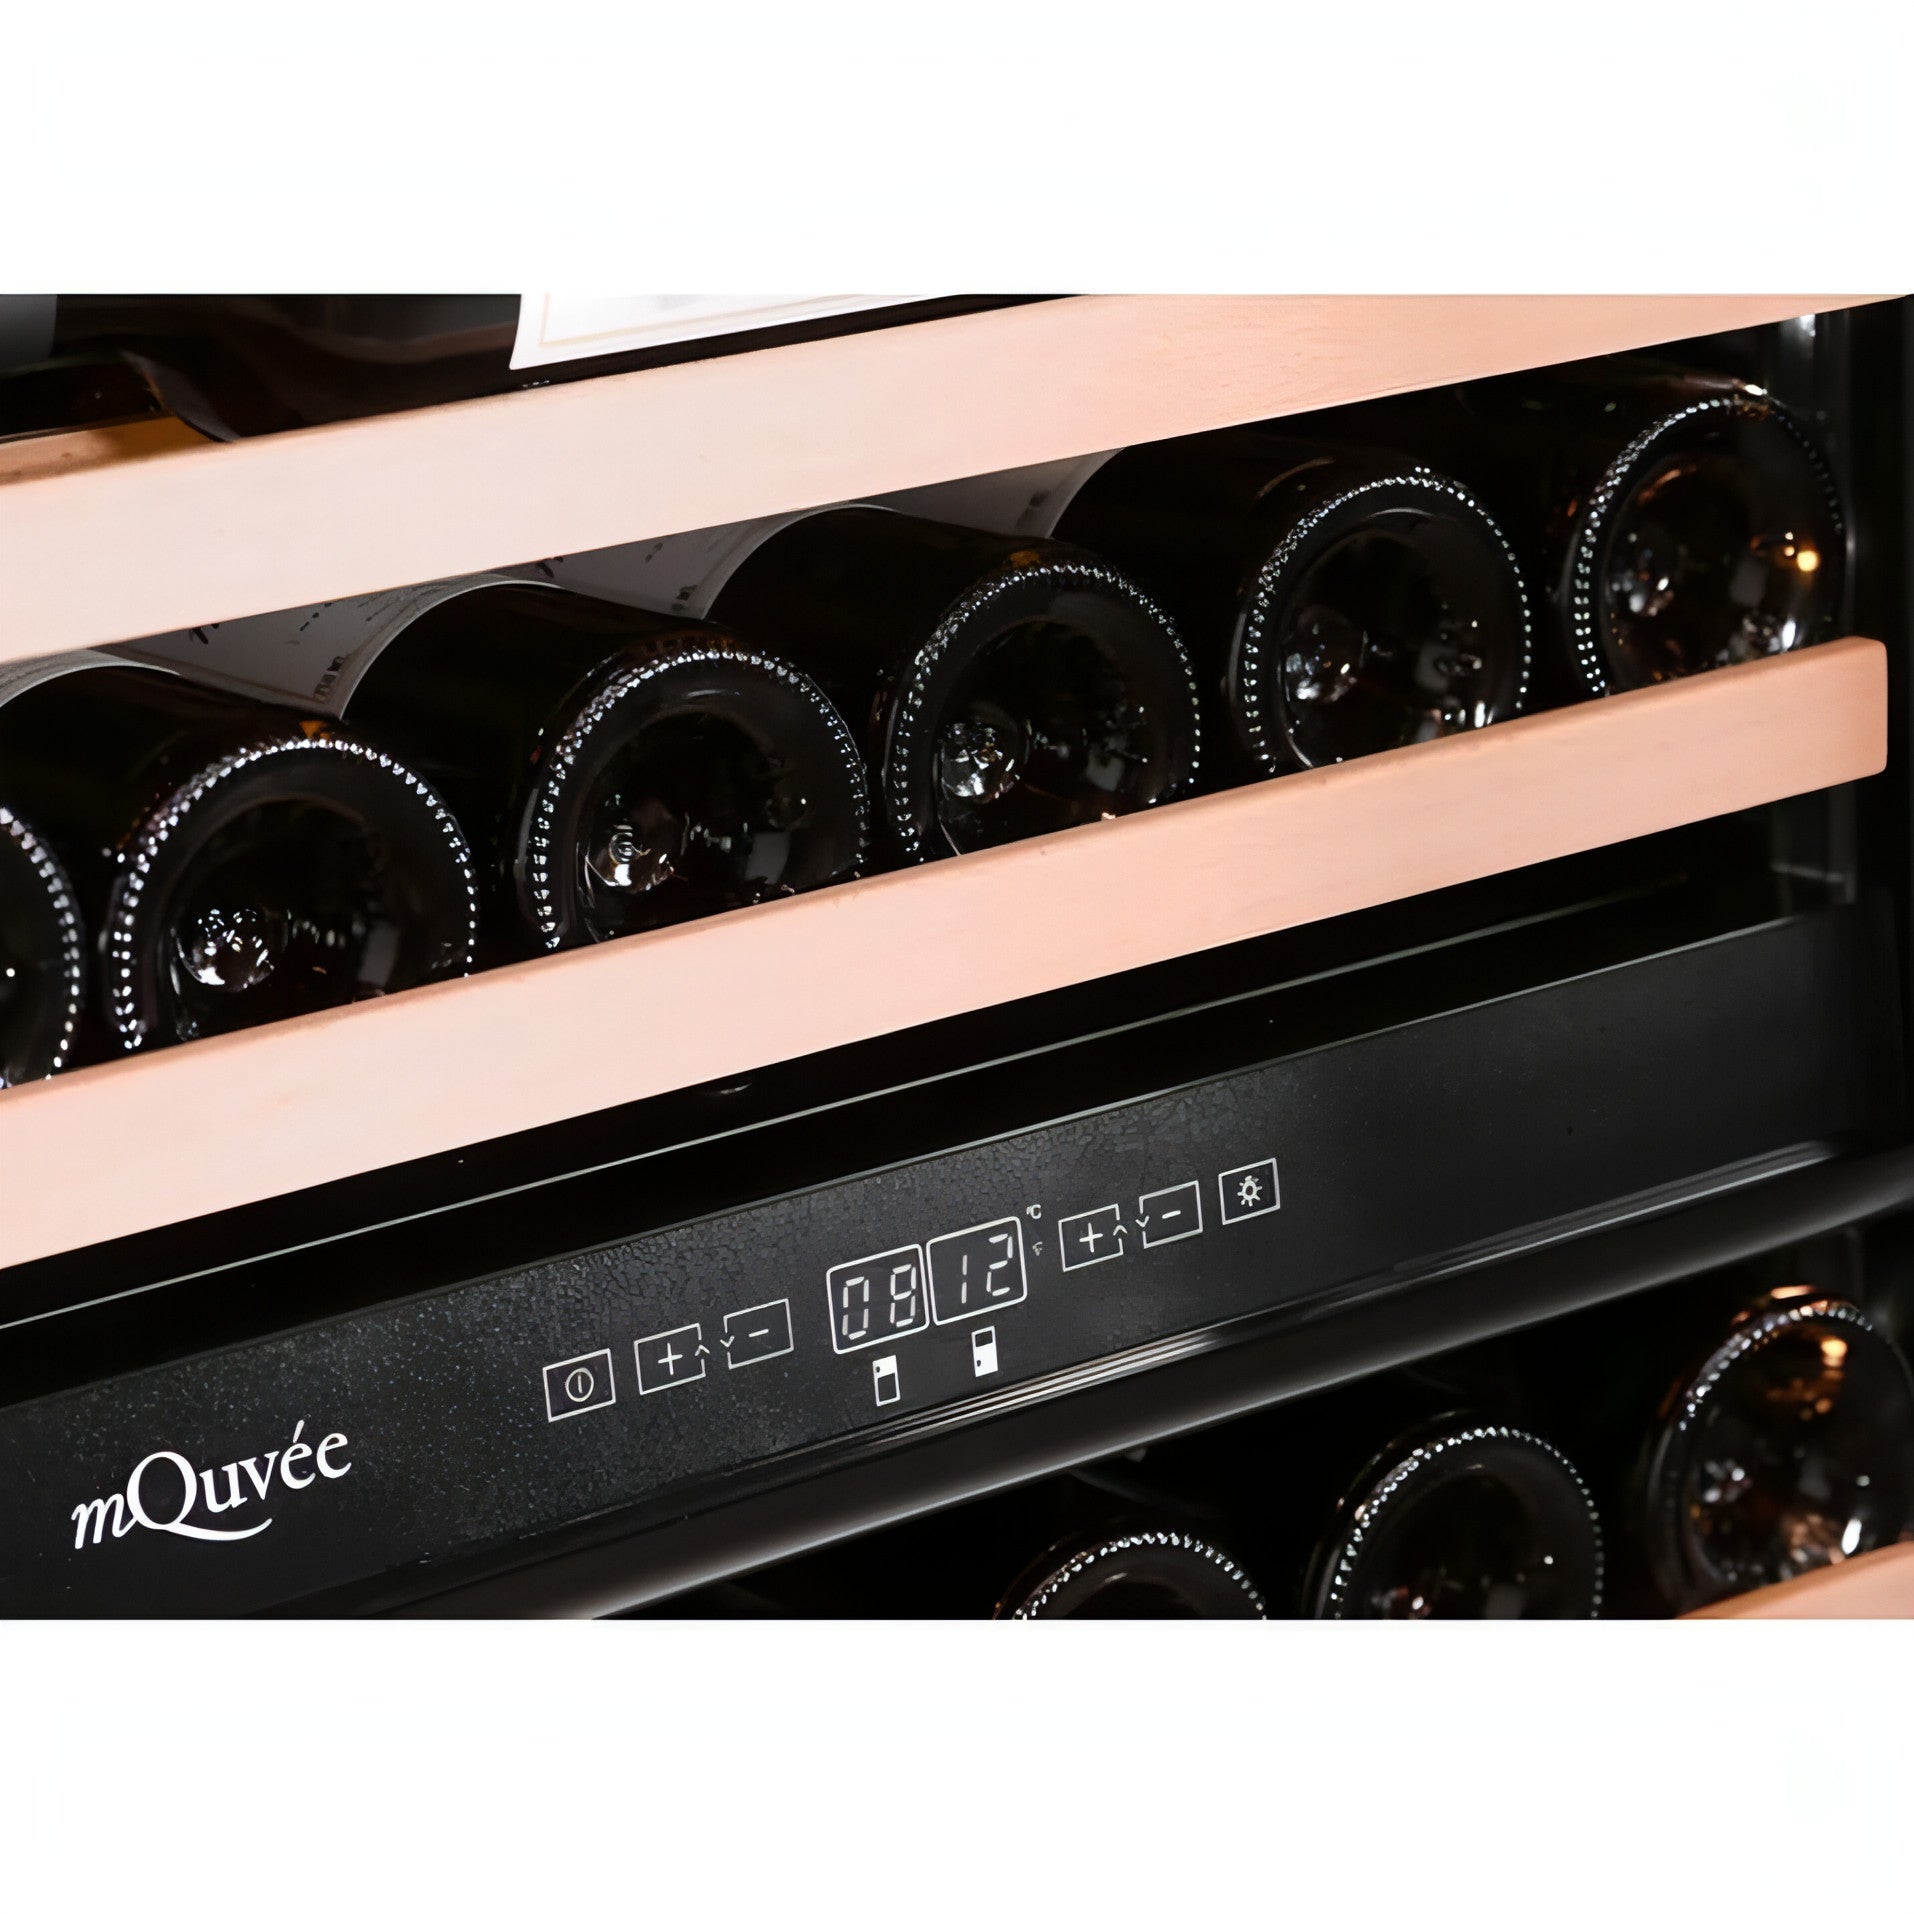 mQuvée - Integrated Wine Cooler - WineKeeper 25D - Modern